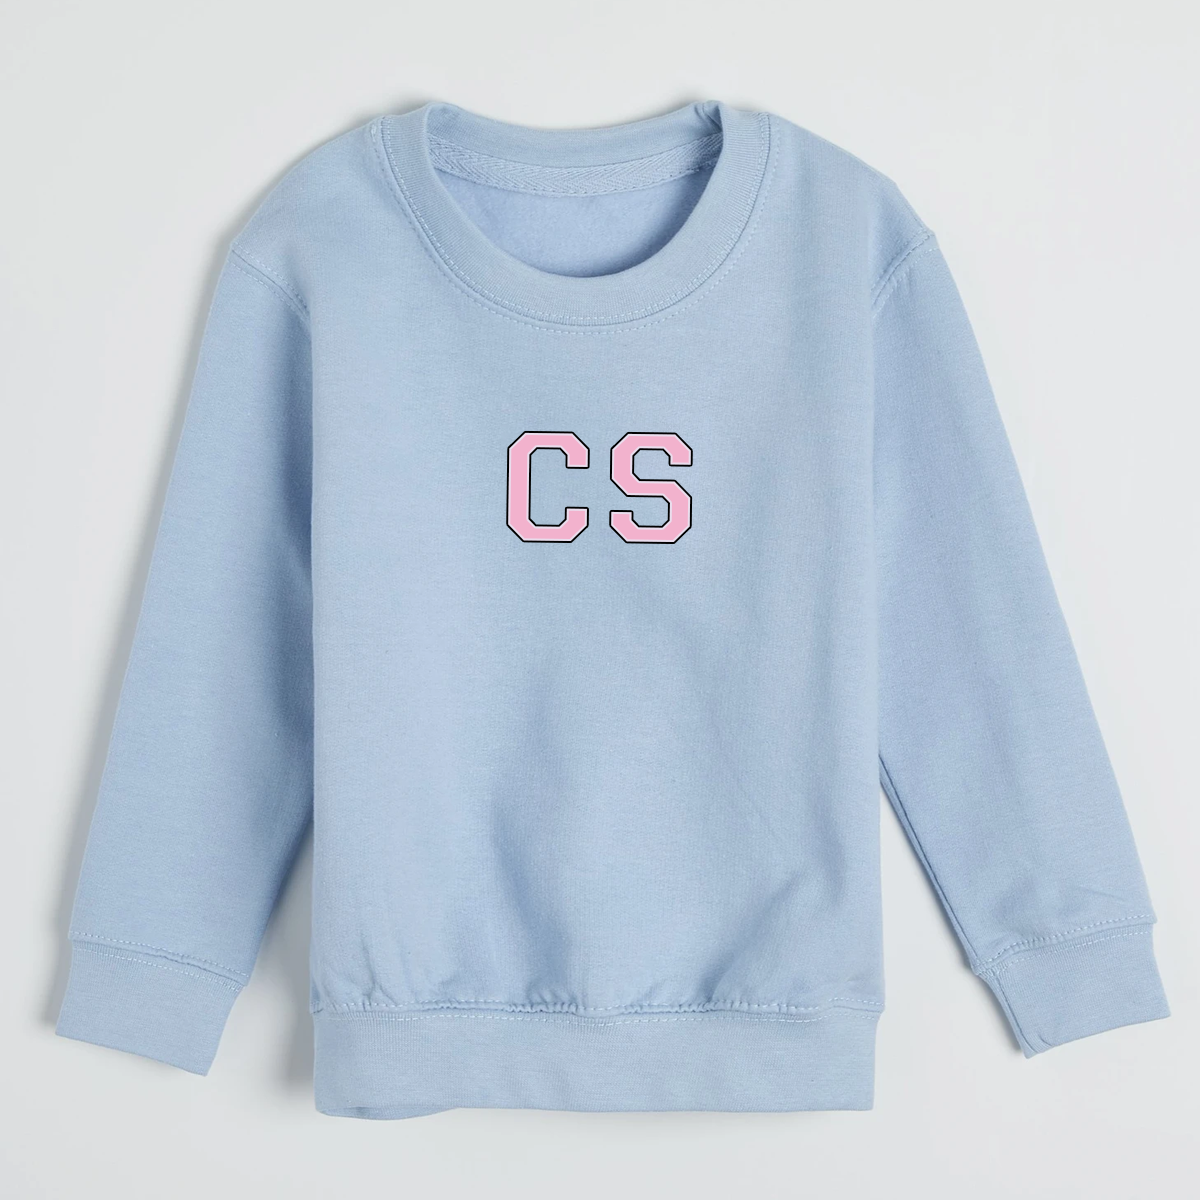 MiniVIP© Personalised Varisty Letters Baby Blue Sweatshirt